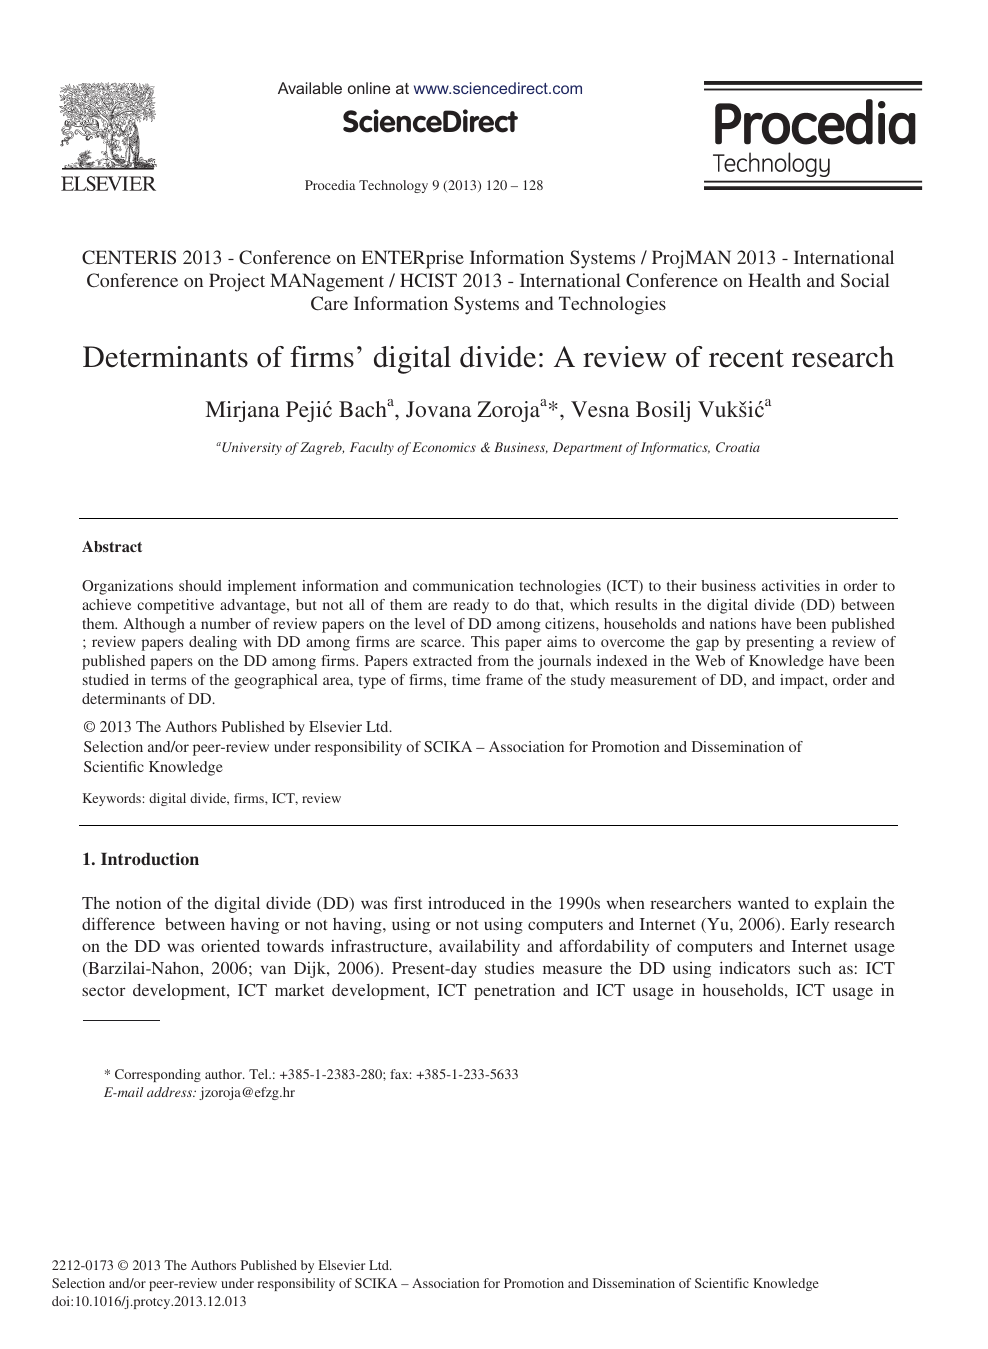 digital divide research paper